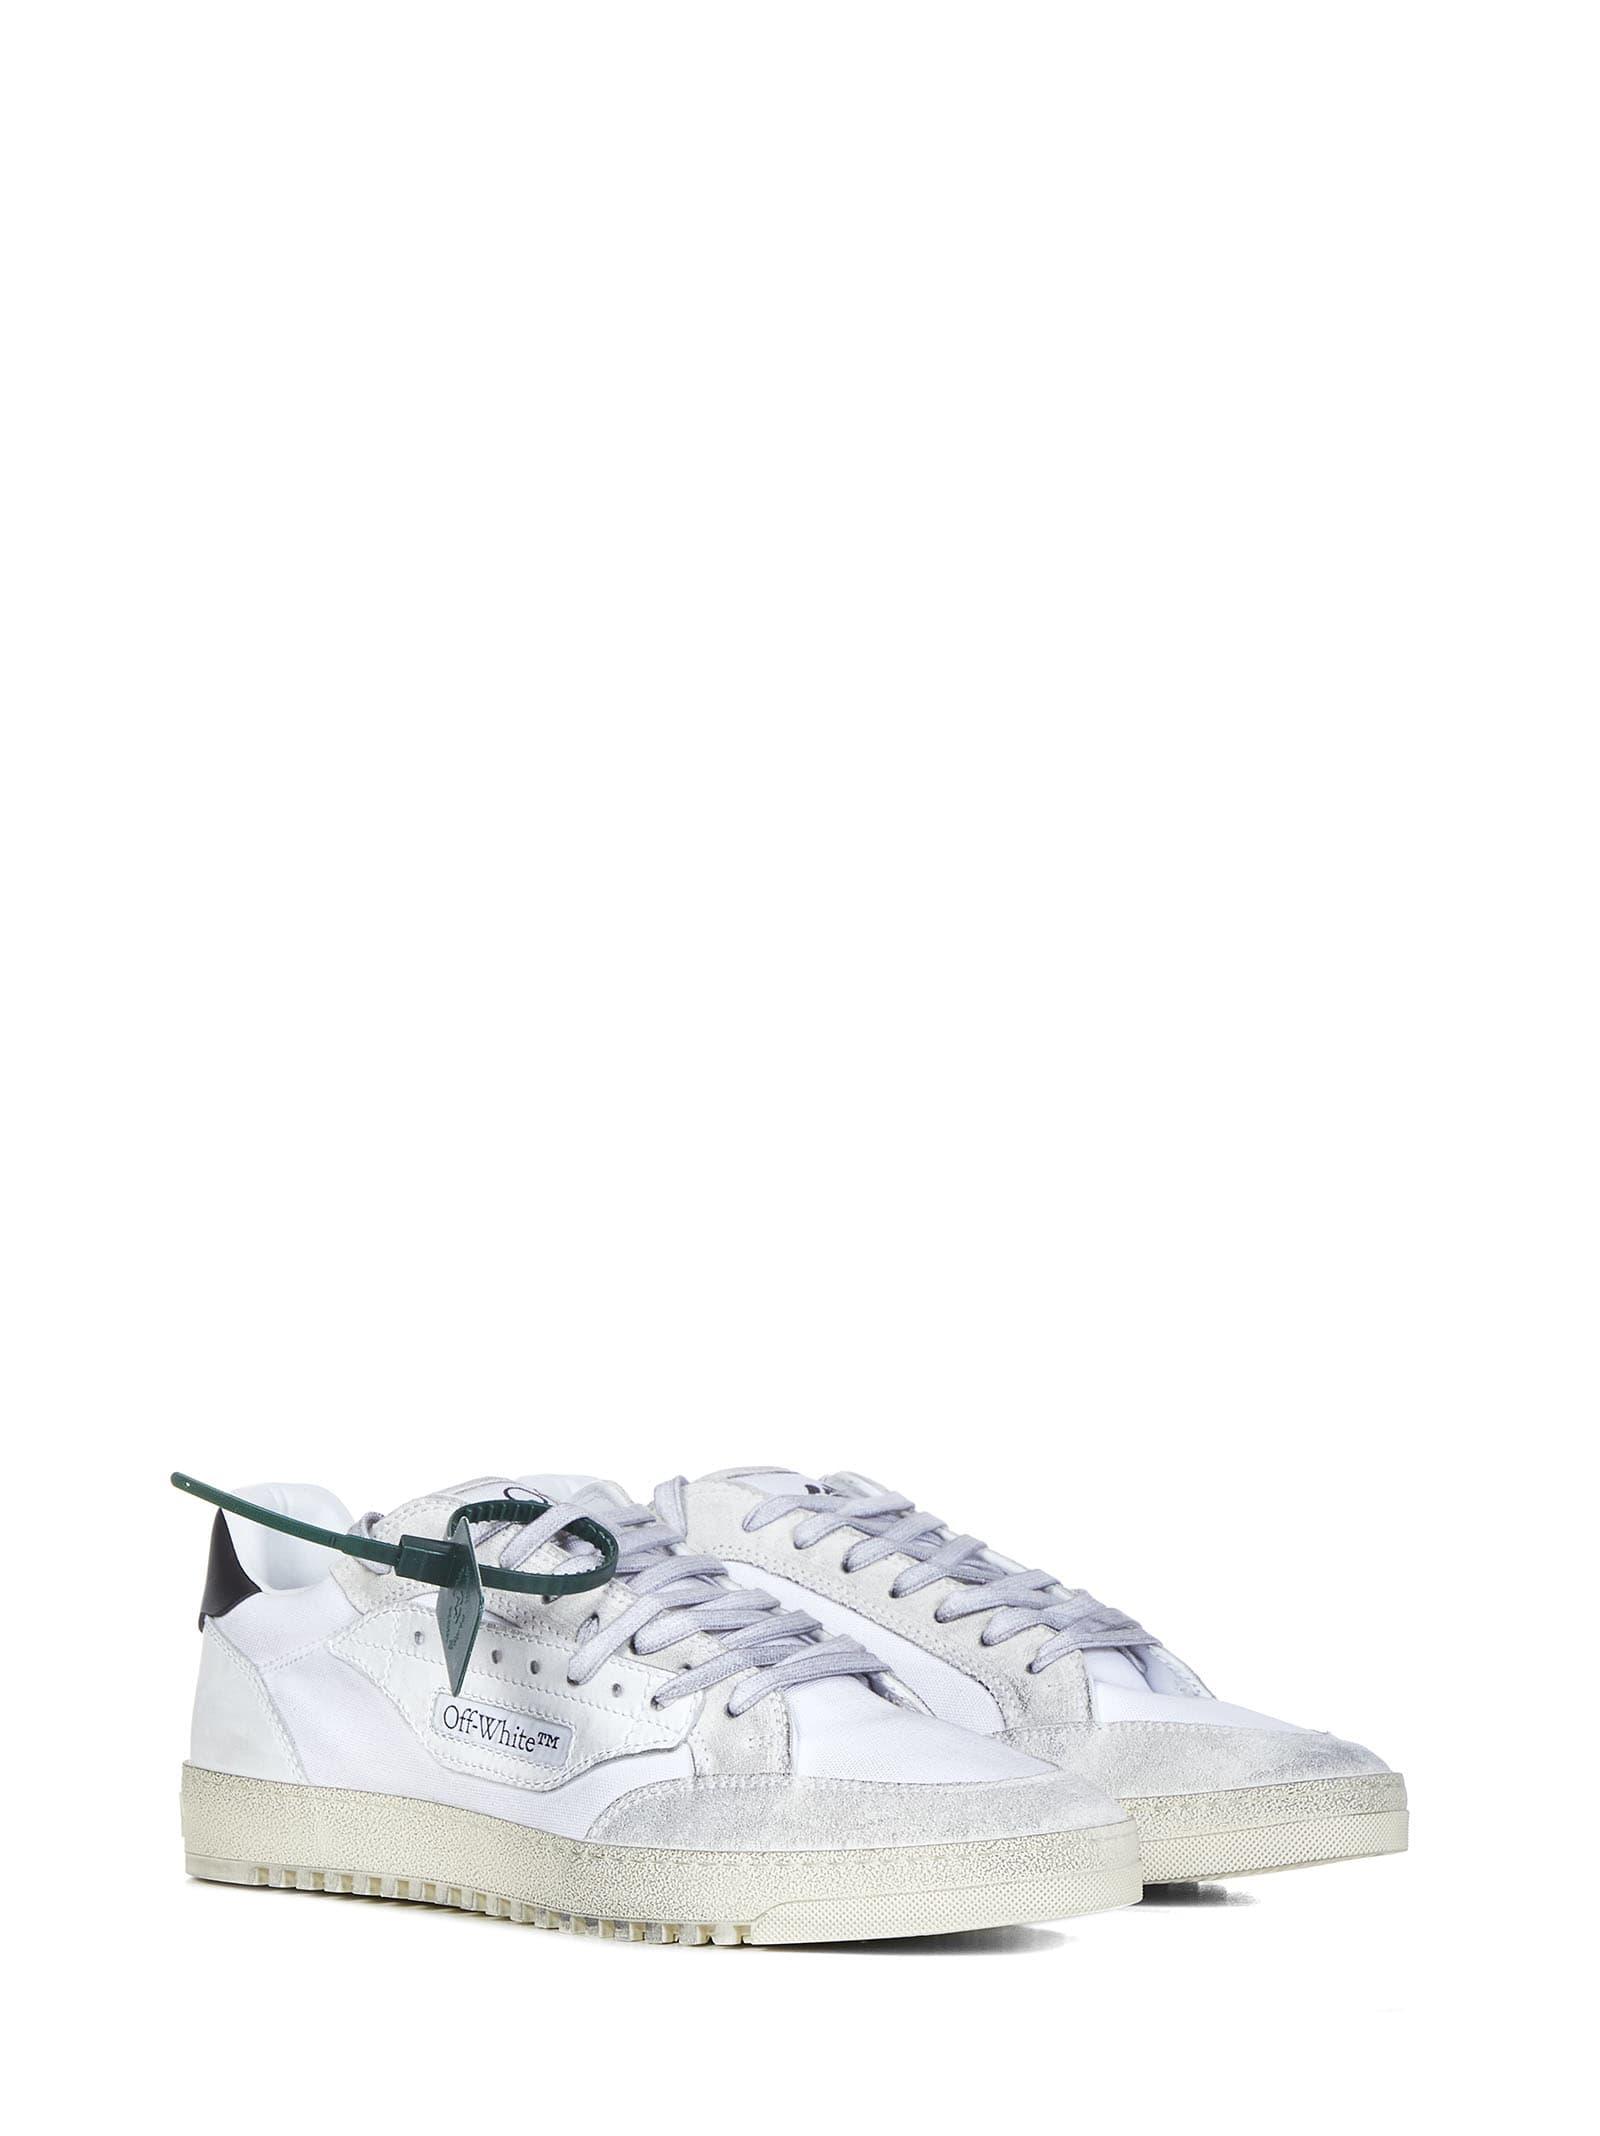 Off-White c/o Virgil Abloh 5.0 Sneakers in White for Men | Lyst